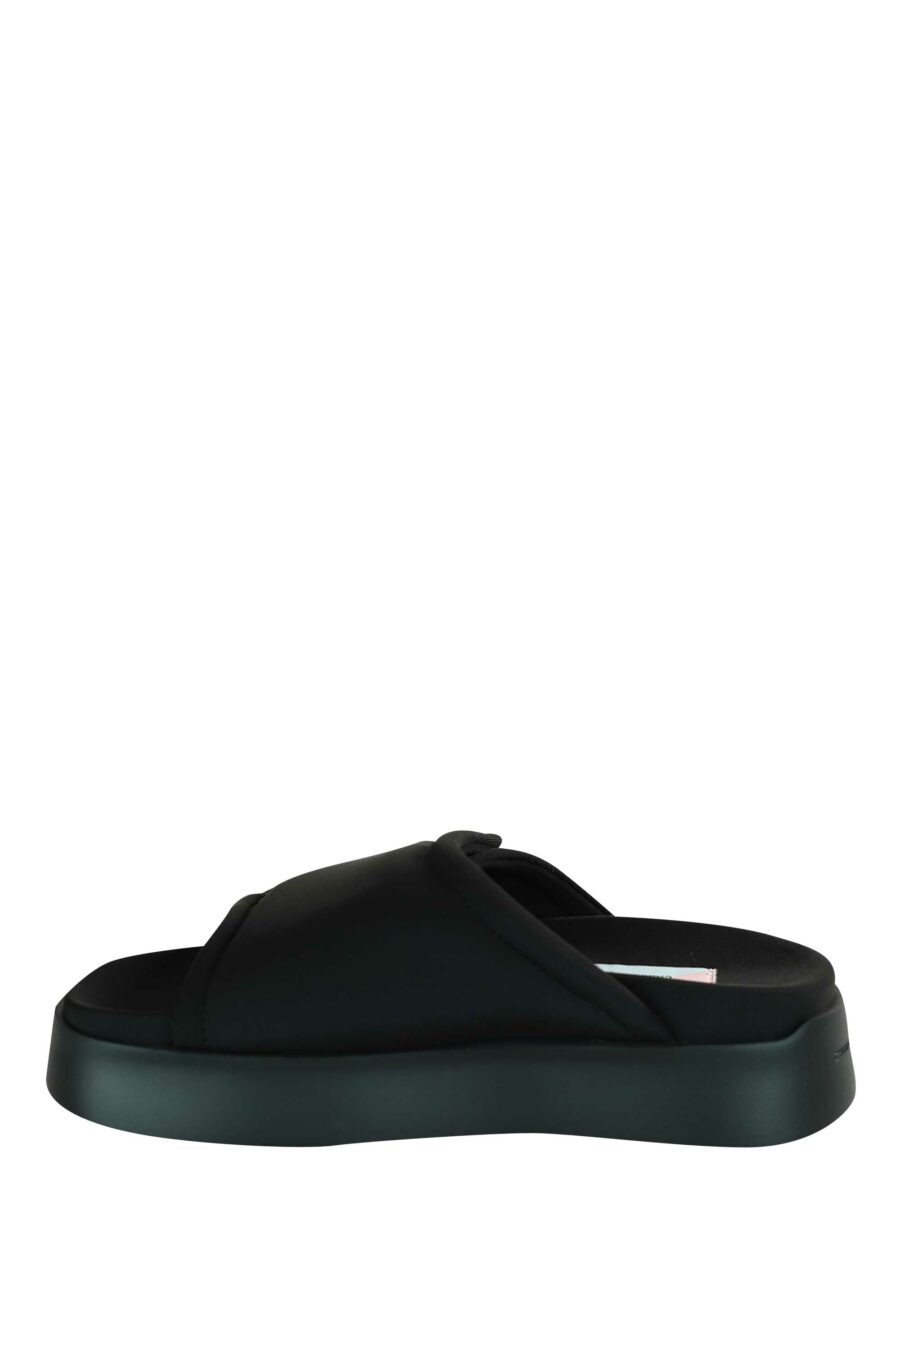 Sandálias pretas com velcro e plataforma preta - 8059482630771 3